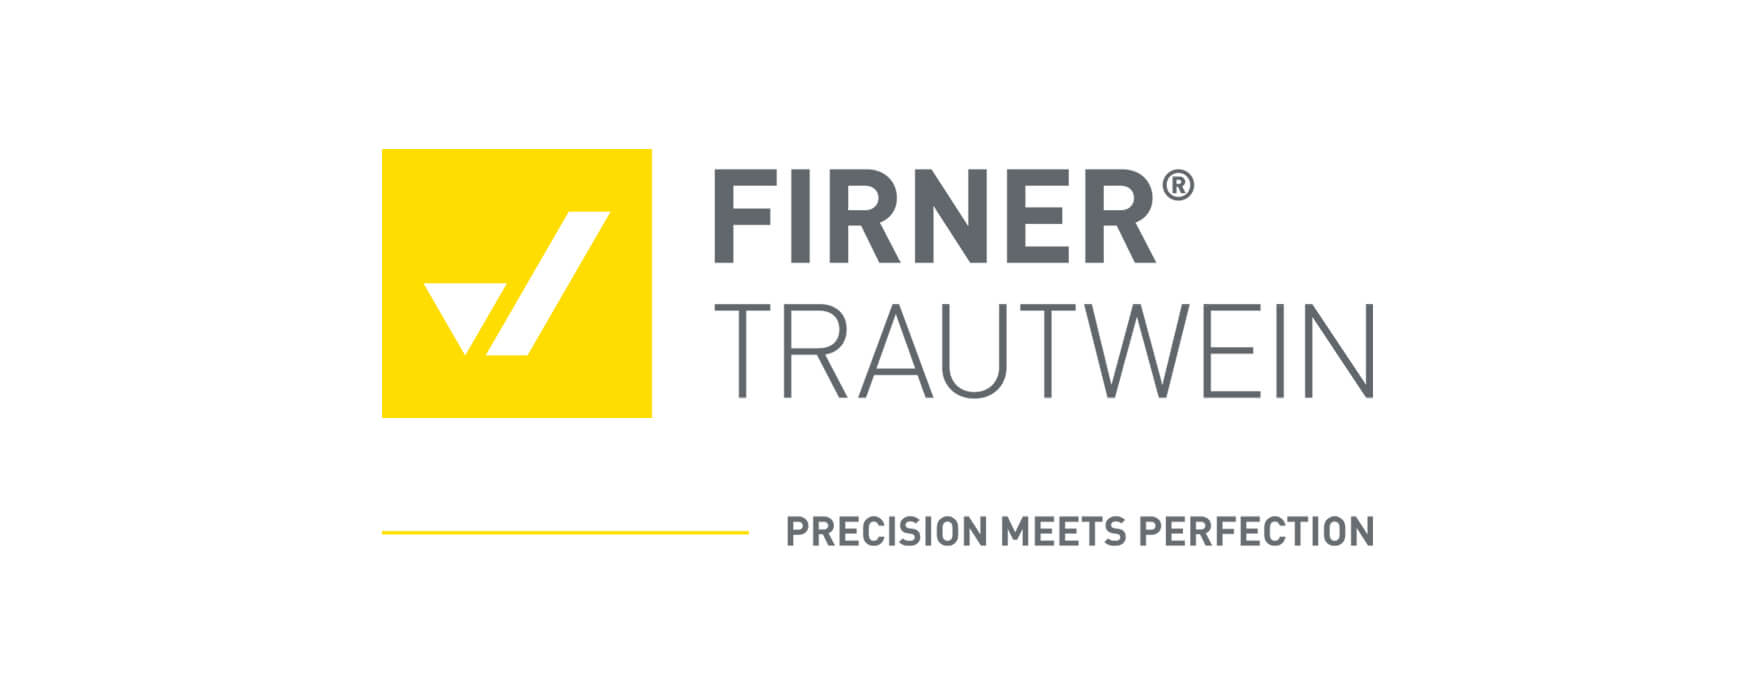 Firner Trautwein Logo Claim